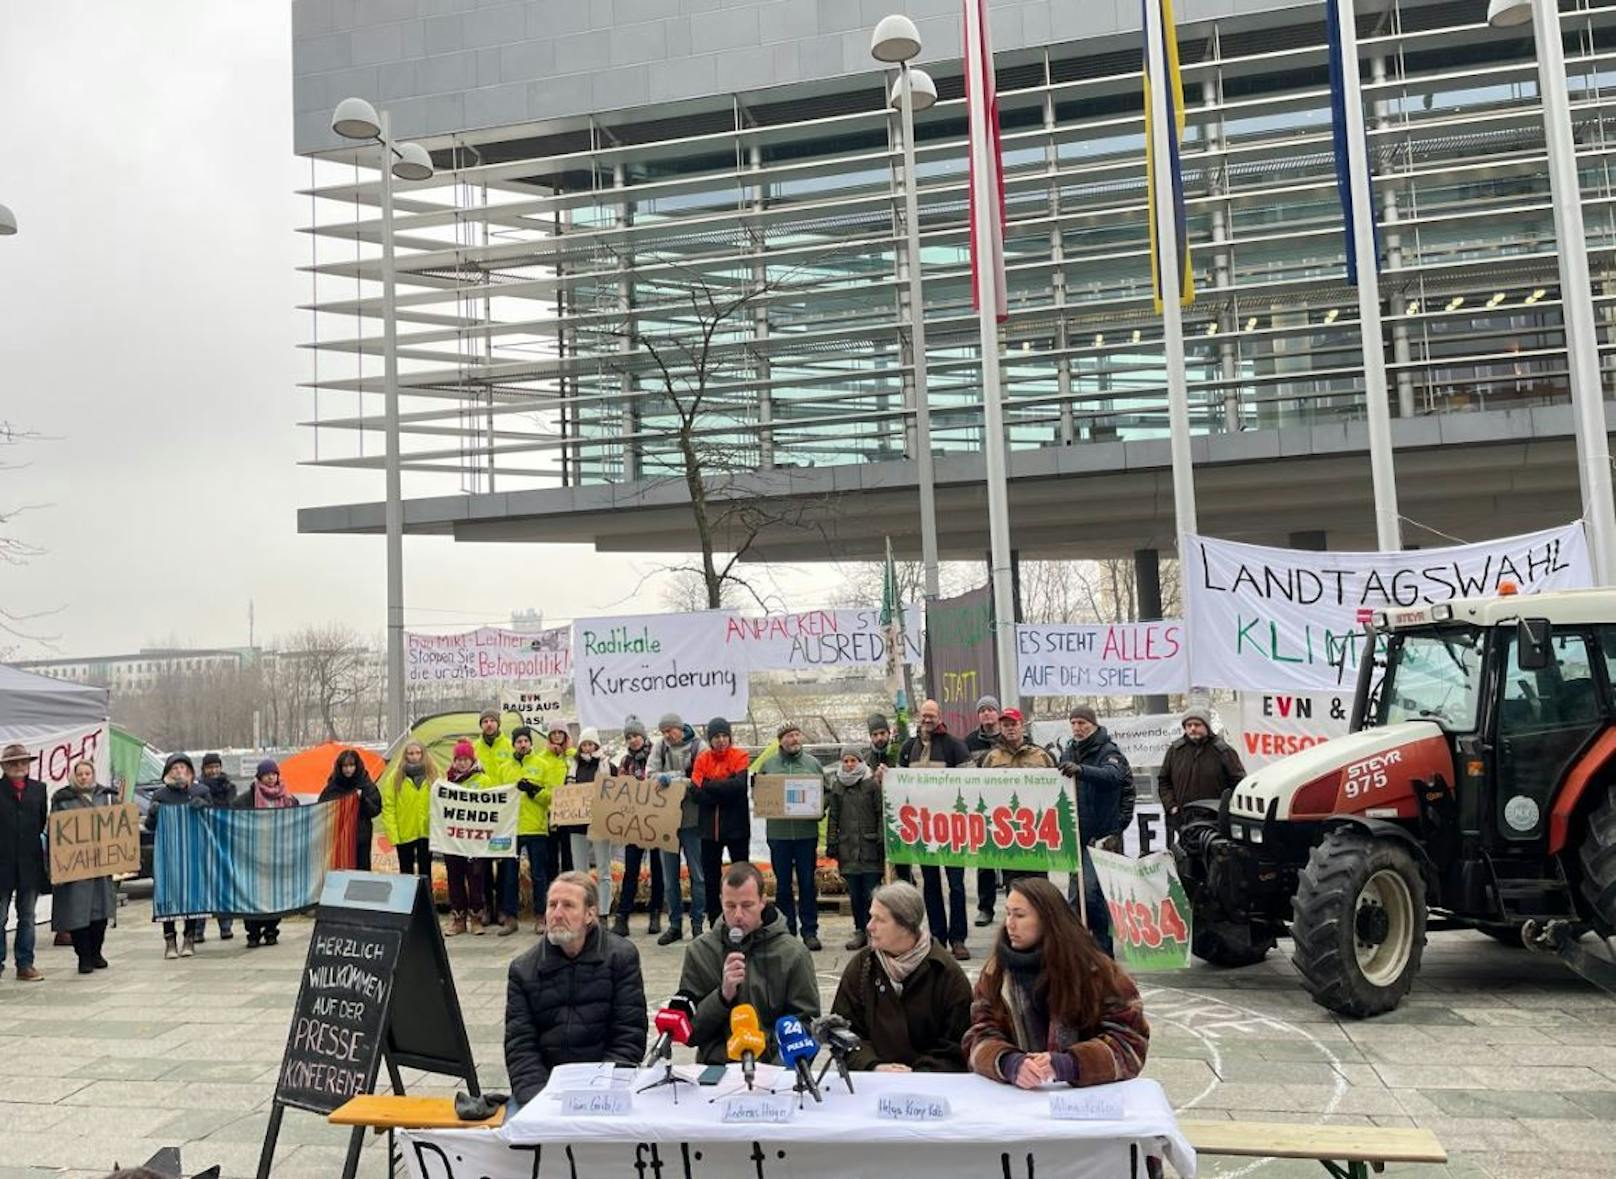 Gemeinsam mit den Klimaaktivisten von Fridays For Future NÖ setzen Bauern ein klares Zeichen gegen die zunehmende Bodenversiegelung und fehlende Klimapolitik in NÖ.